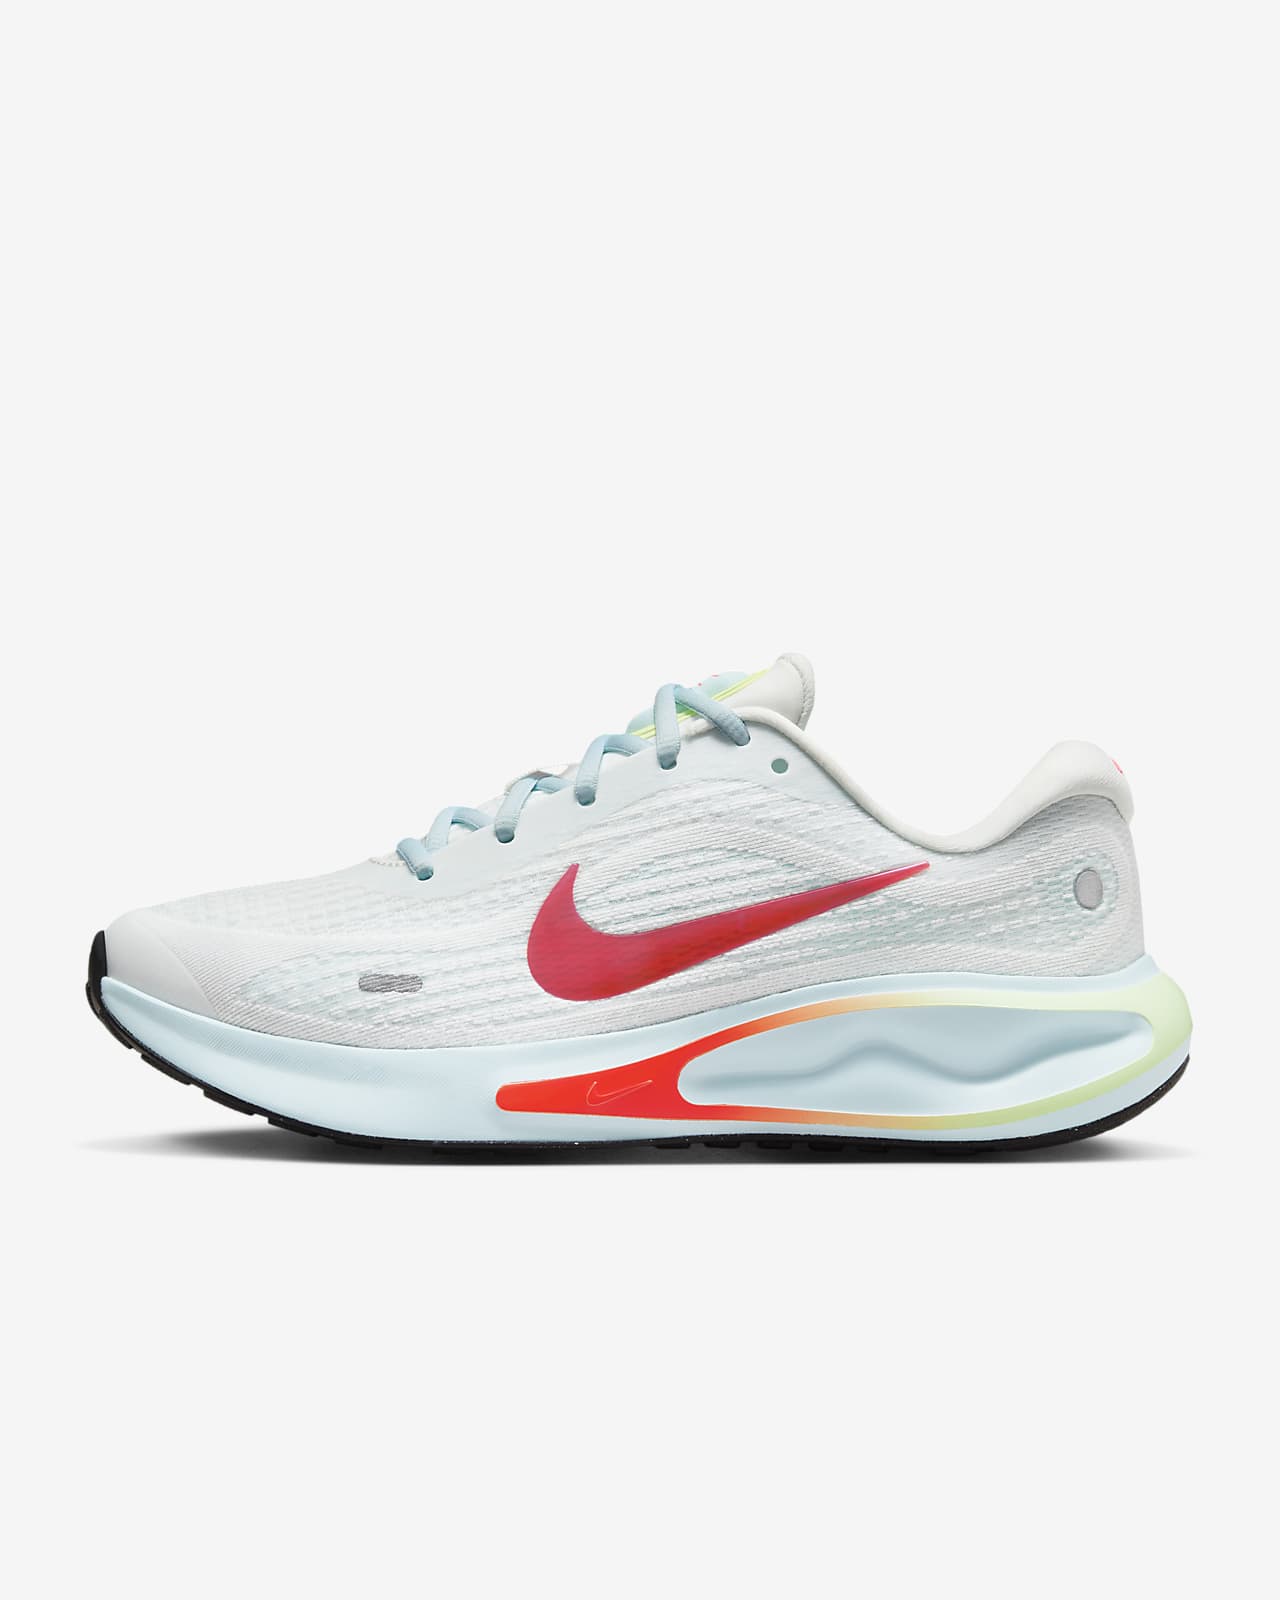 Γυναικεία παπούτσια για τρέξιμο σε δρόμο Nike Journey Run